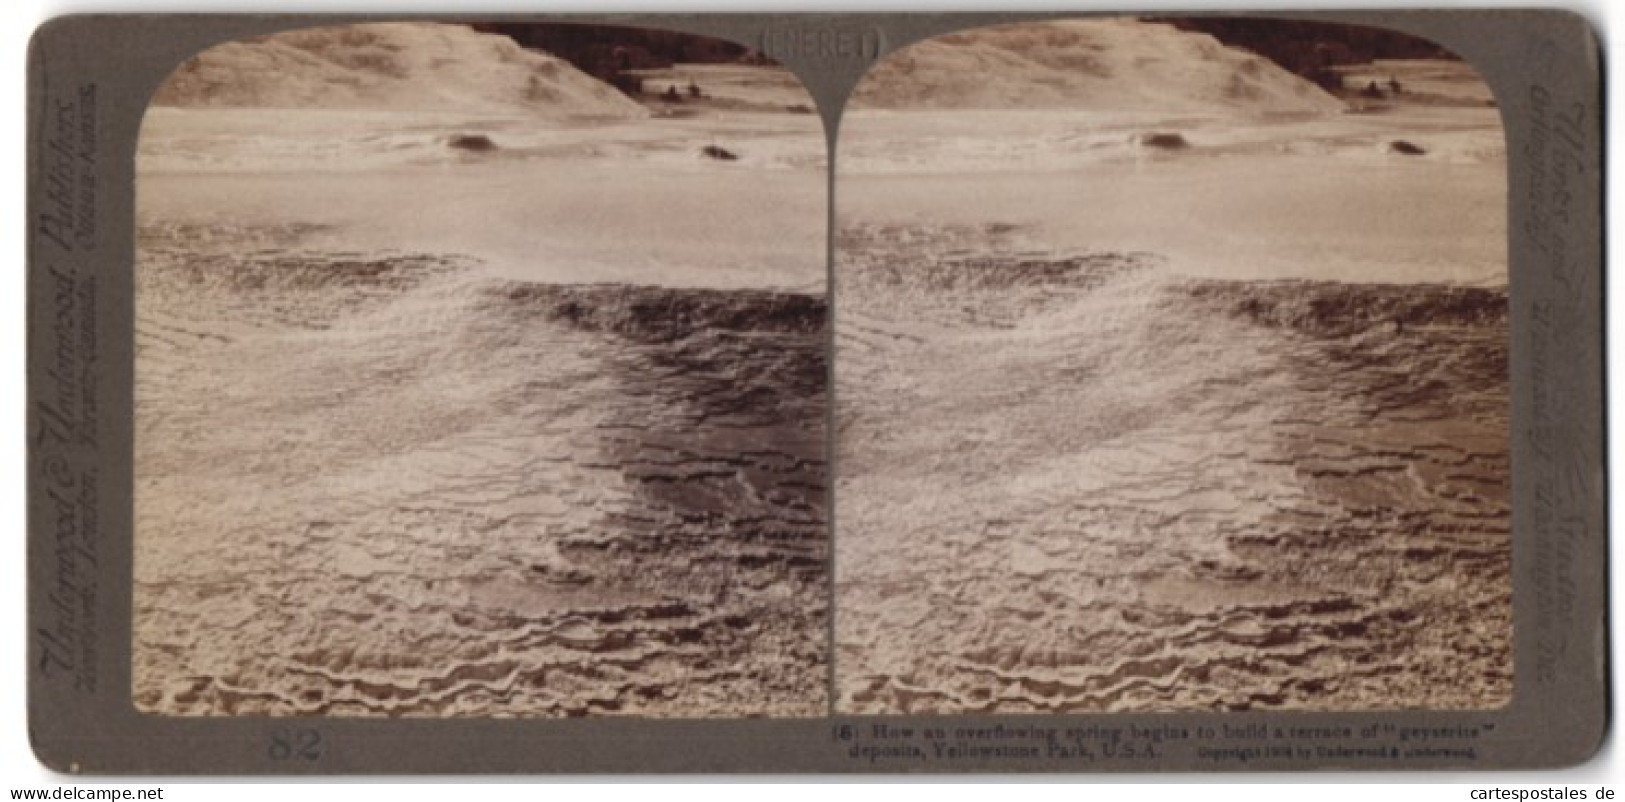 Stereo-Fotografie Underwood & Underwood, New York, Ansicht Yellowstone Park, Terrassenbildung An Einem Geysir  - Stereoscopic